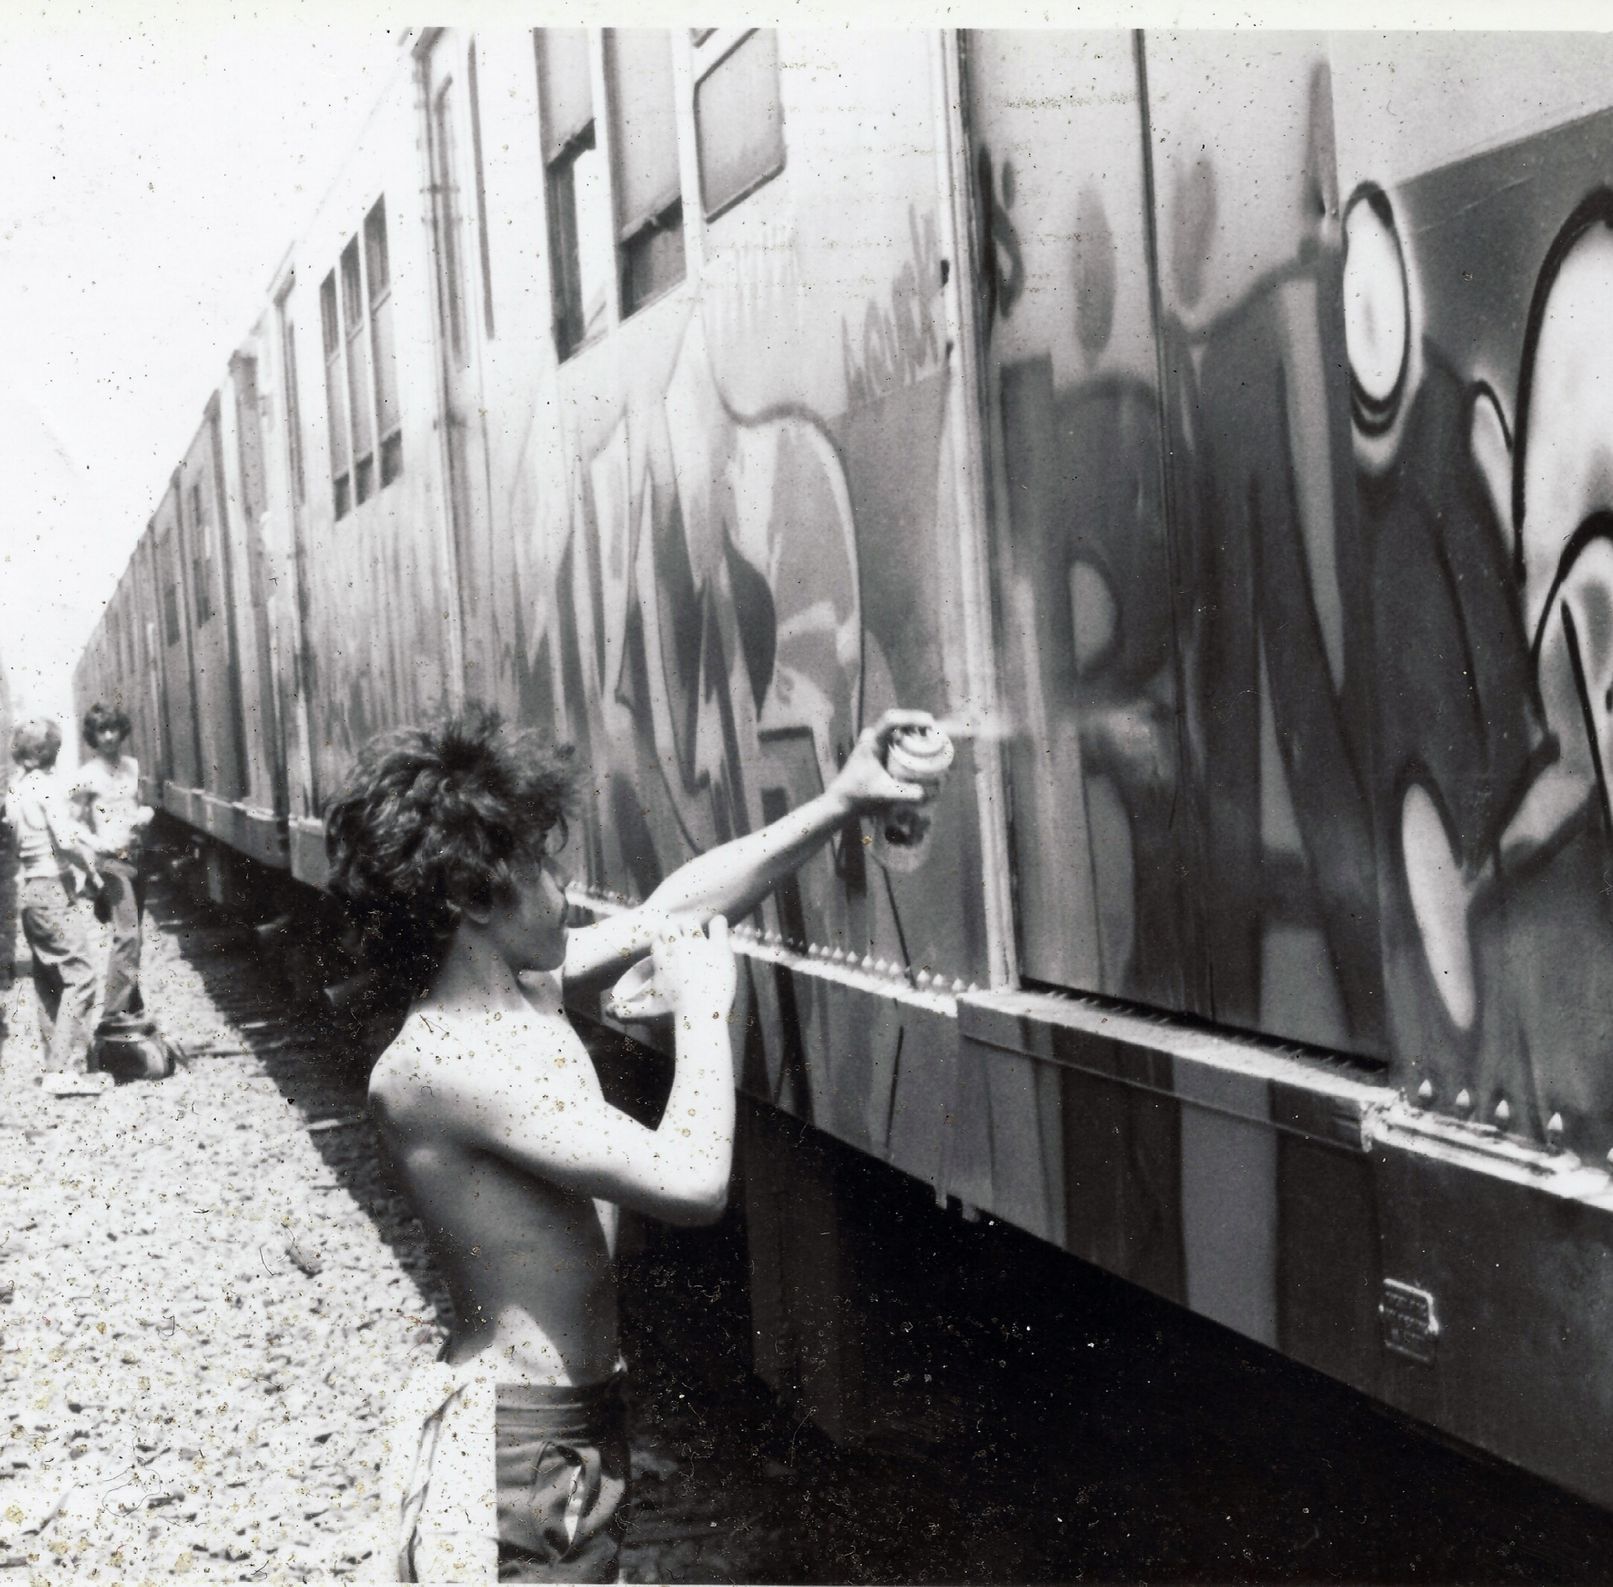 Graffiti festival Past Present Future